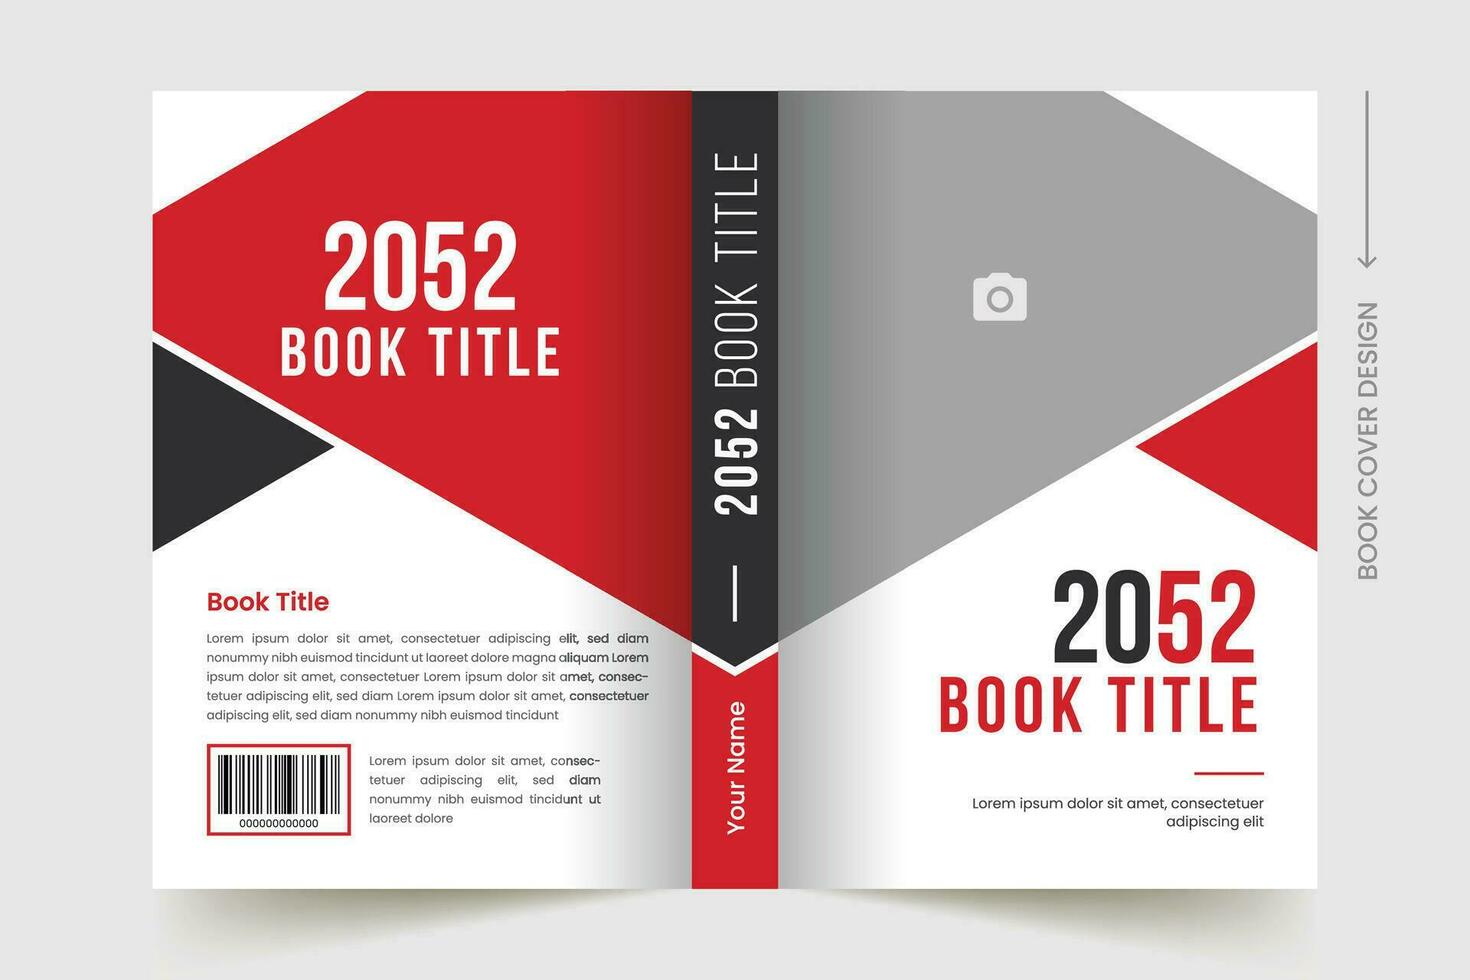 aziendale attività commerciale libro copertina design. professionale design per aziendale attività commerciale vettore